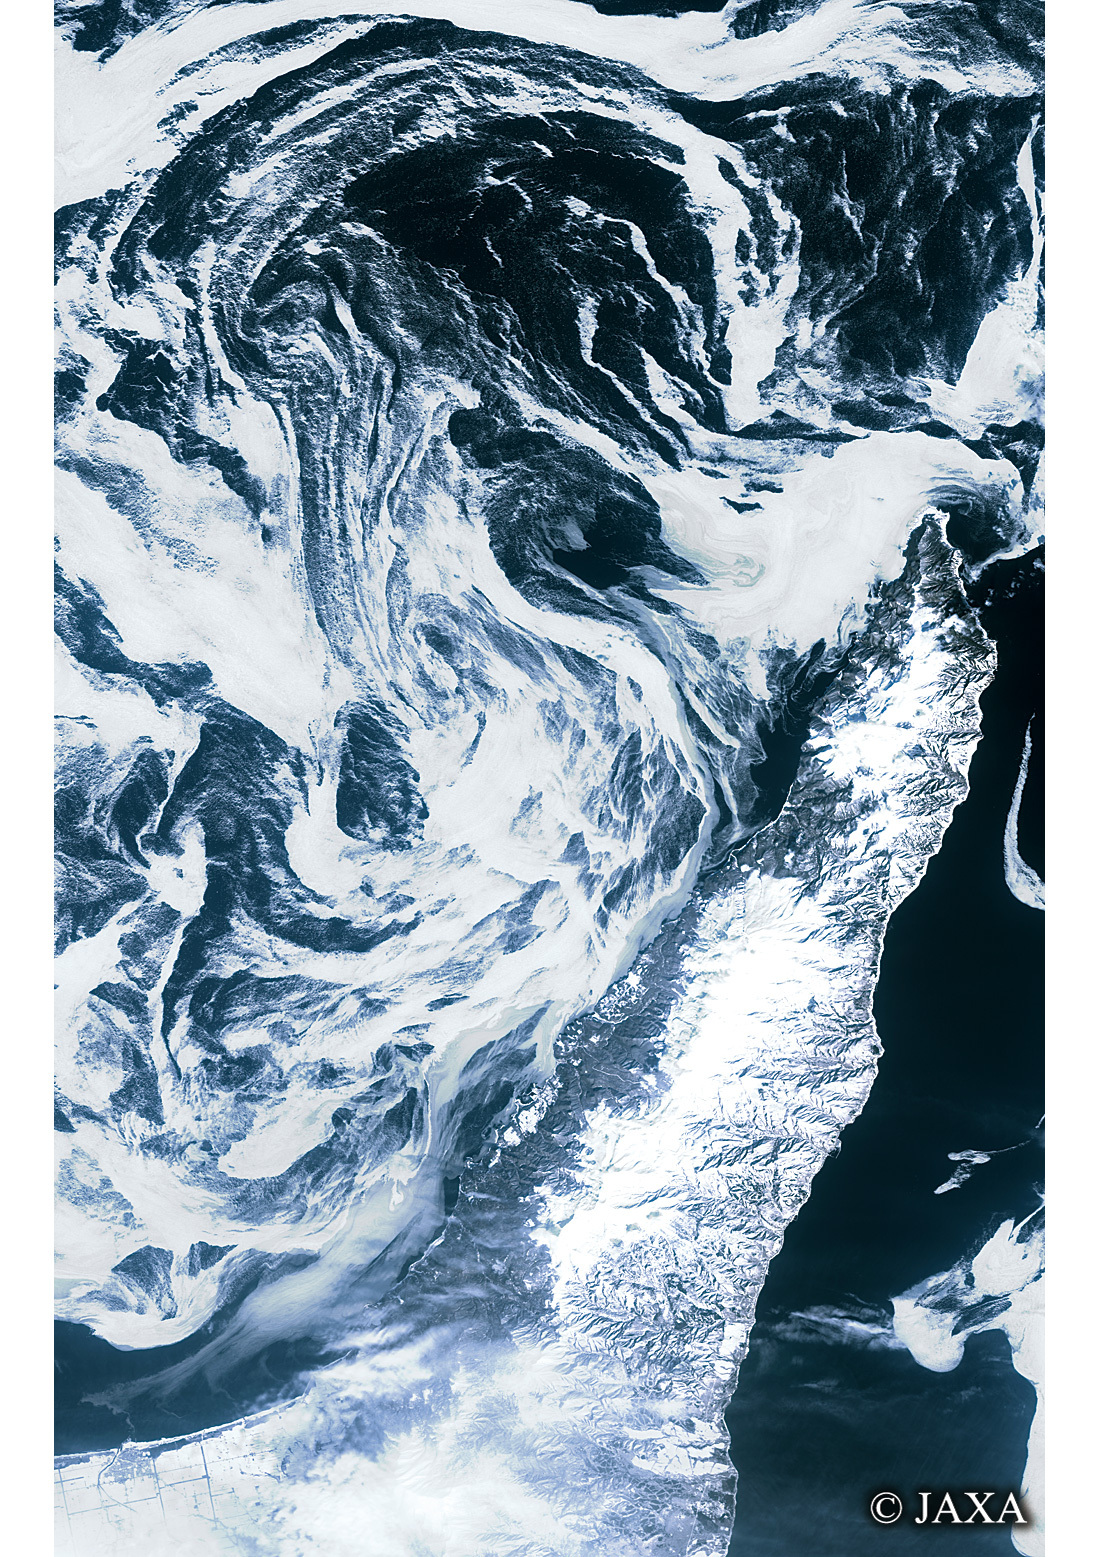 だいちから見た日本の都市 知床半島と海氷:衛星画像